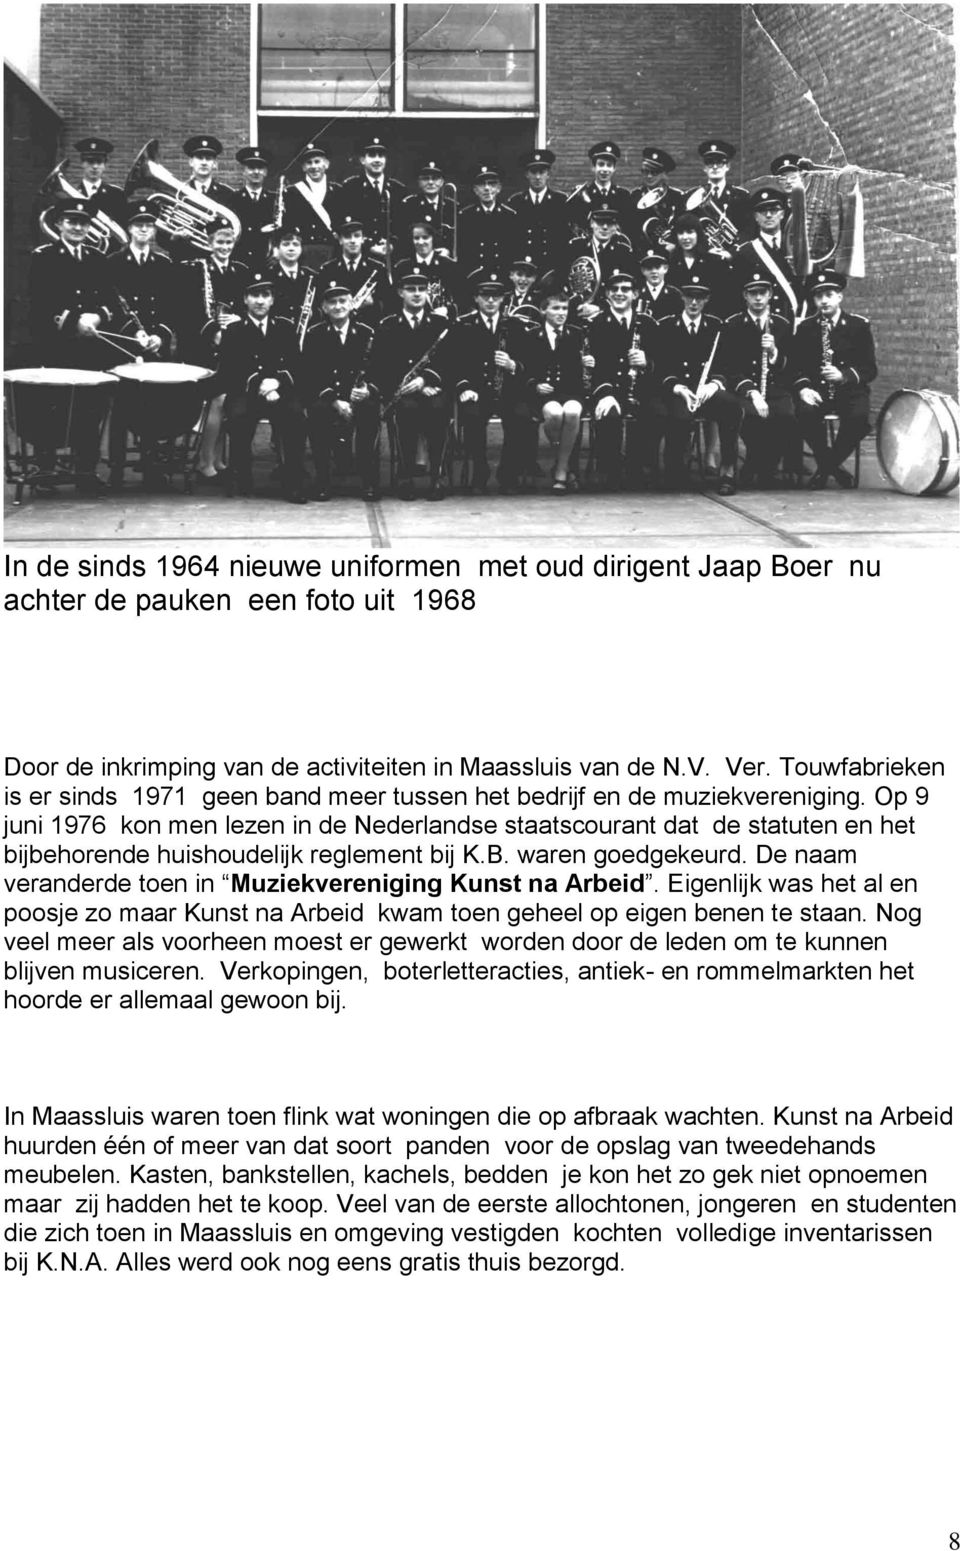 Op 9 juni 1976 kon men lezen in de Nederlandse staatscourant dat de statuten en het bijbehorende huishoudelijk reglement bij K.B. waren goedgekeurd.